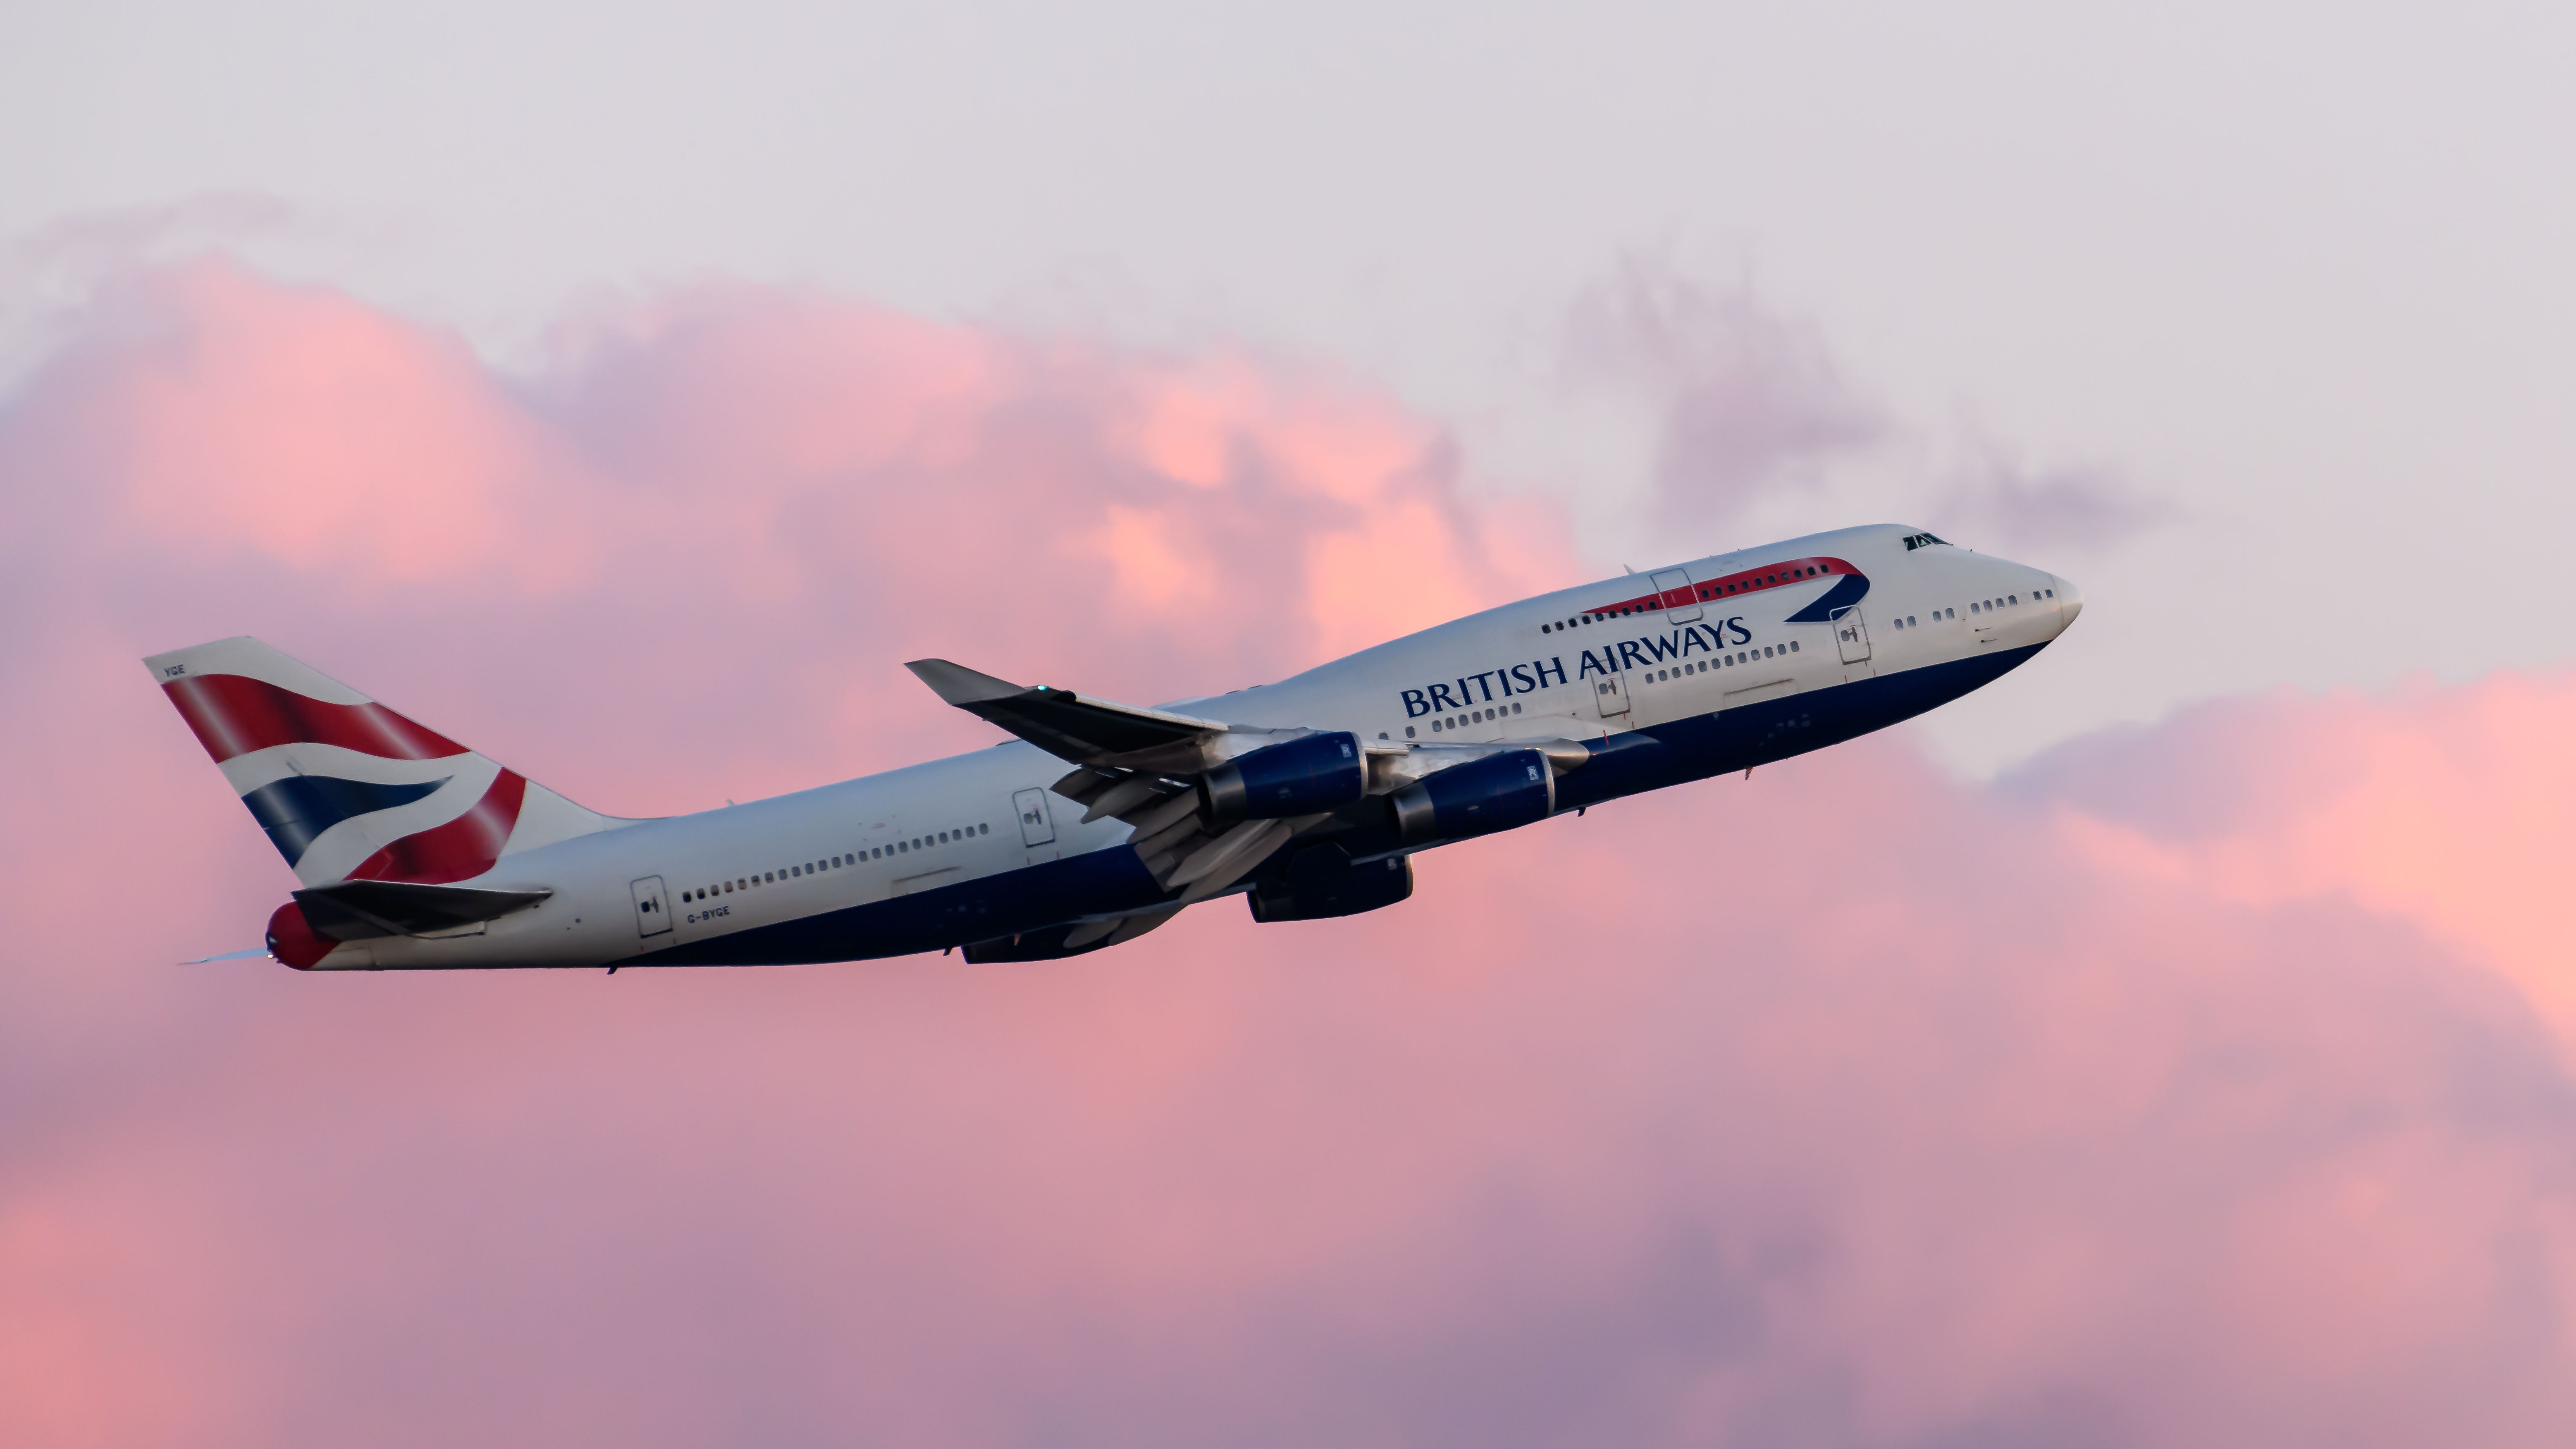 A British Airways Boeing 747 taking off at sunset.